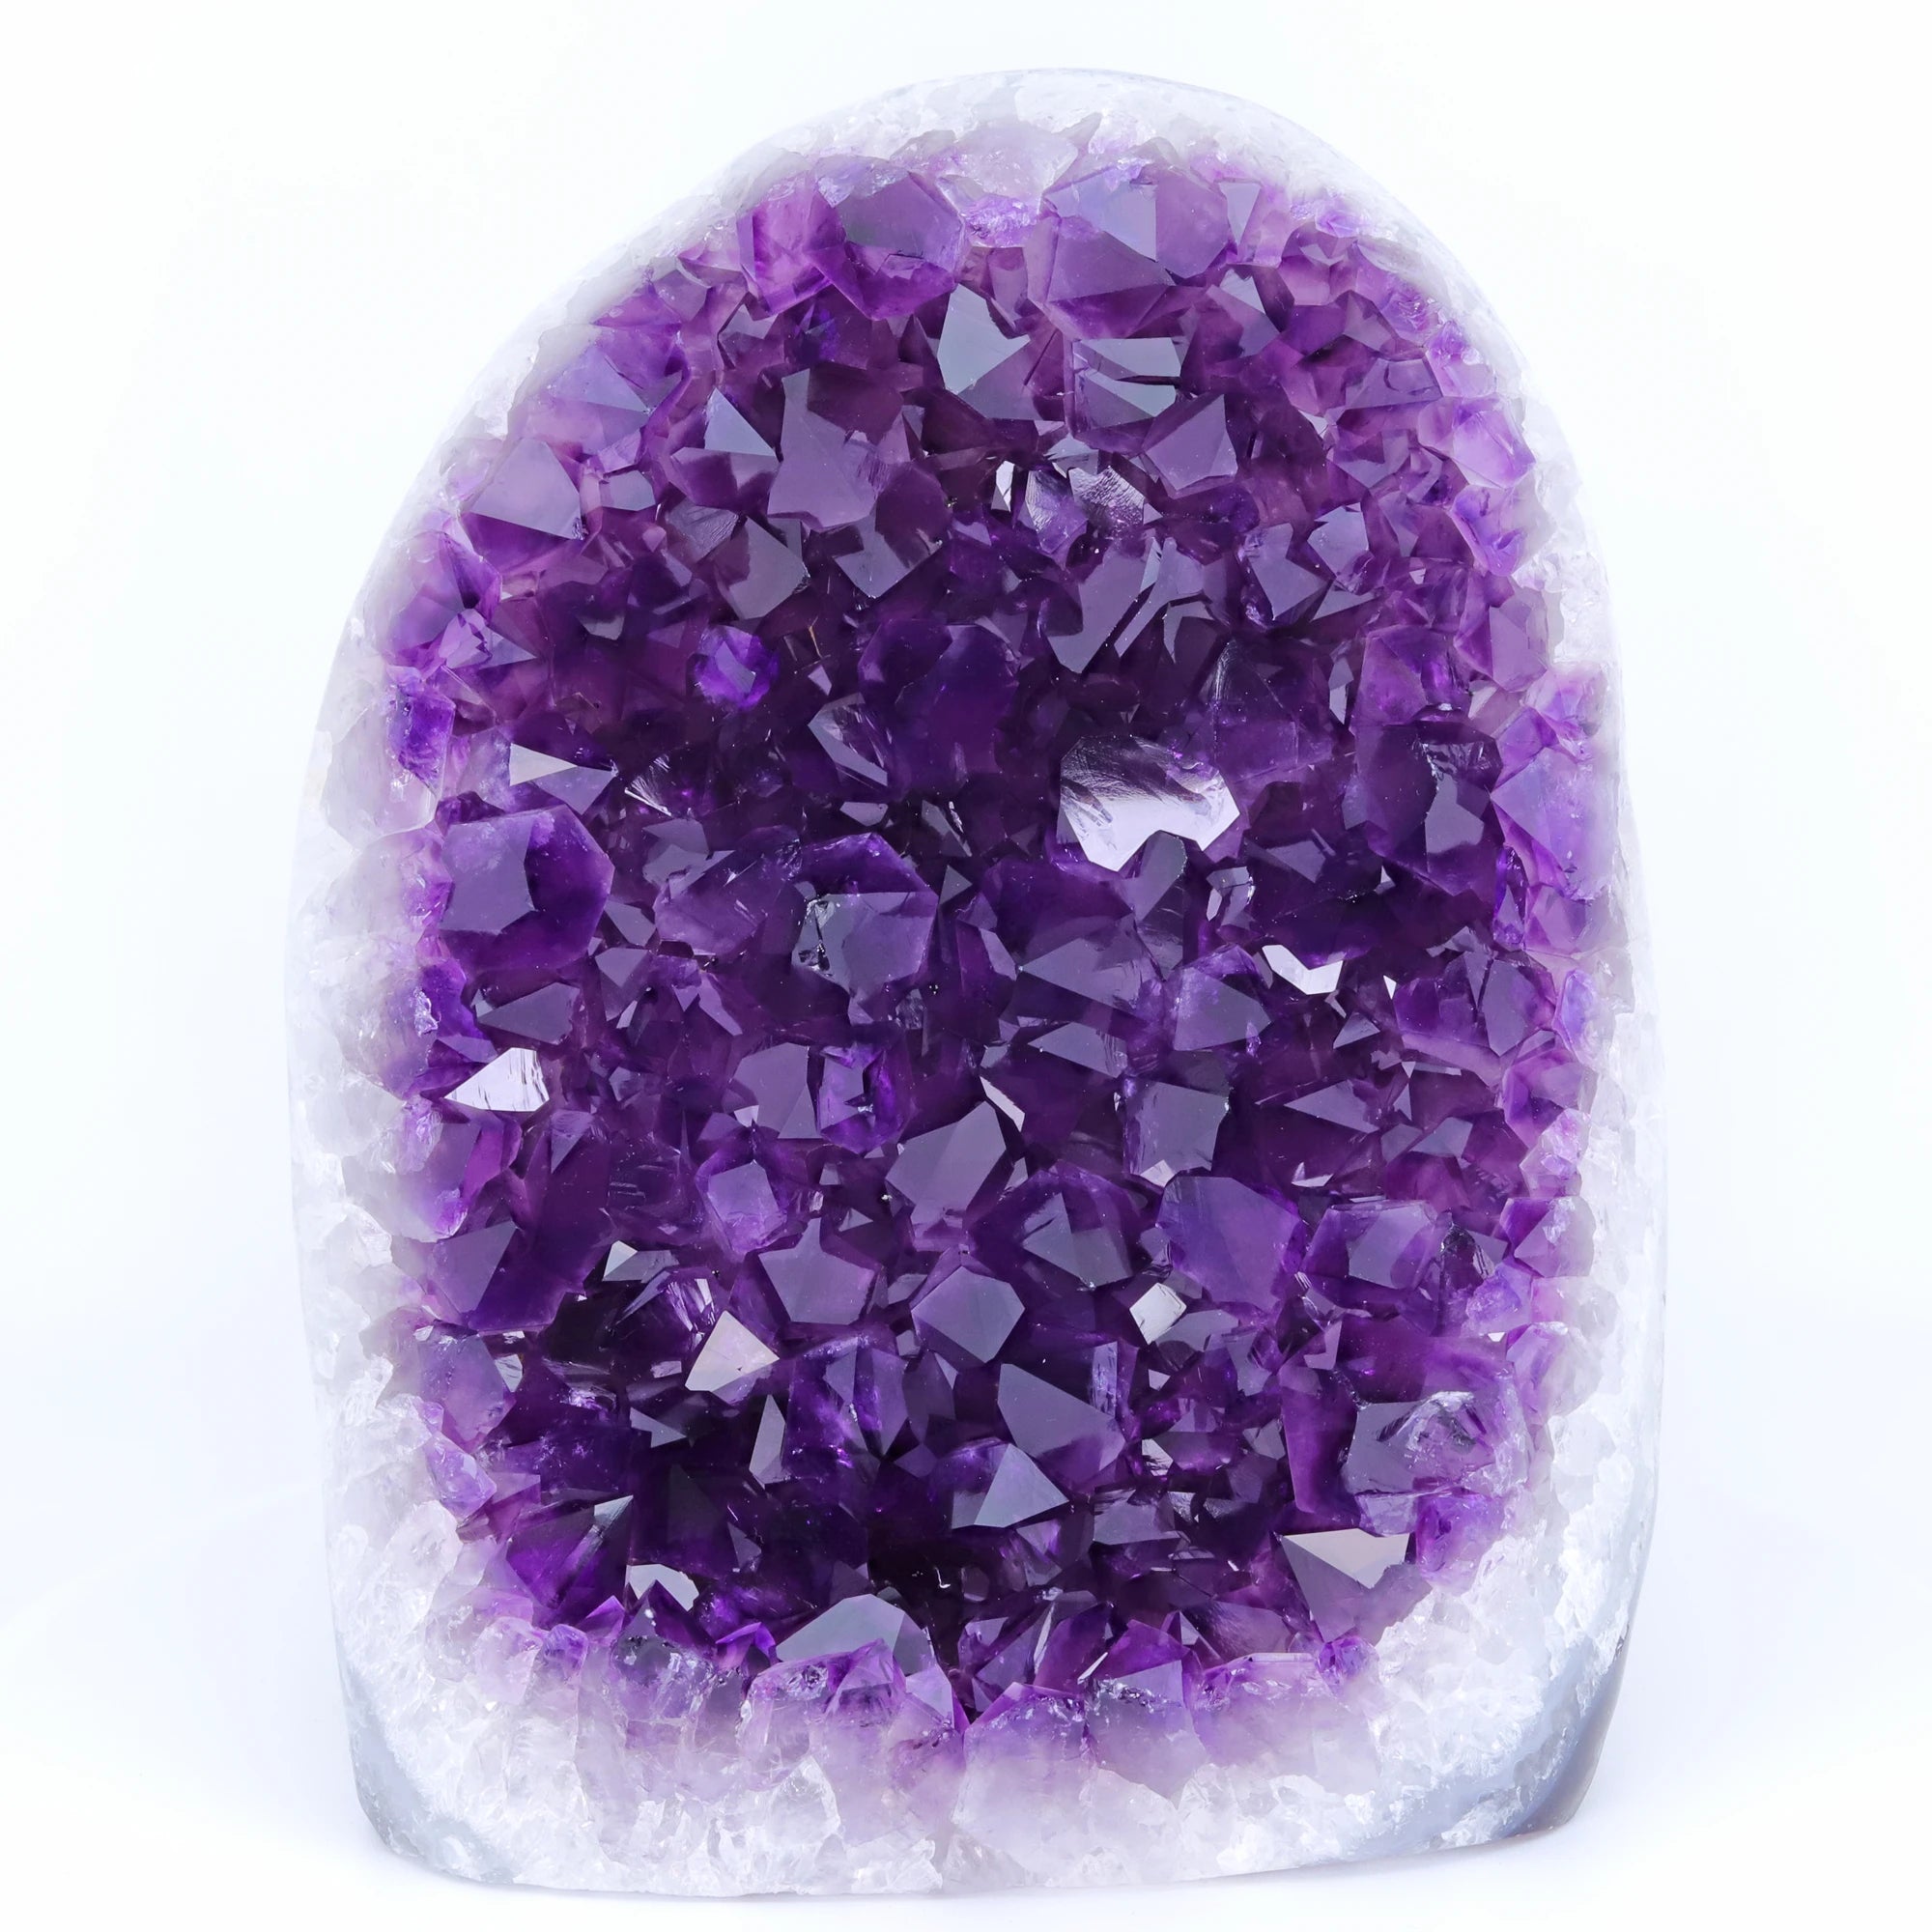 Large Big 2-6Kg Natural Amethyst  Geode Crystal Quartz Cluster Dream Specimen Energy Healing Thunder Egg Wholesale